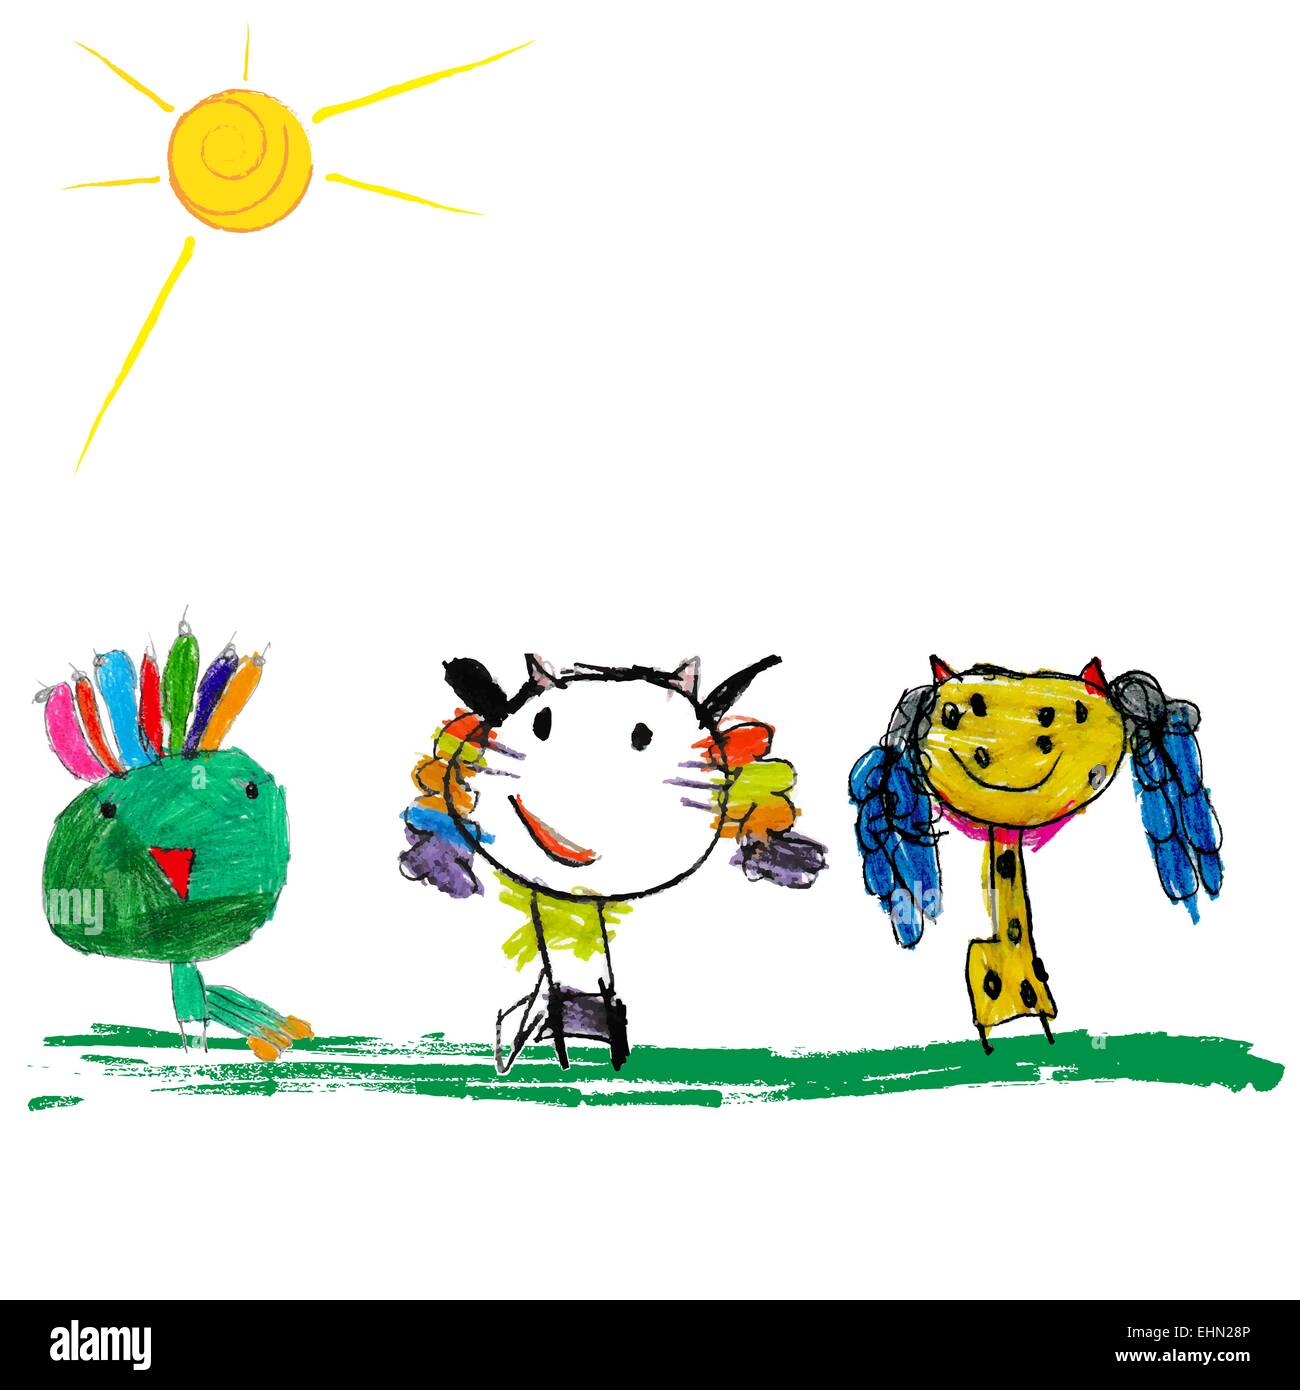 Enfants colorée de l'illustration d'un abstract cat, Peacock et girafe Illustration de Vecteur